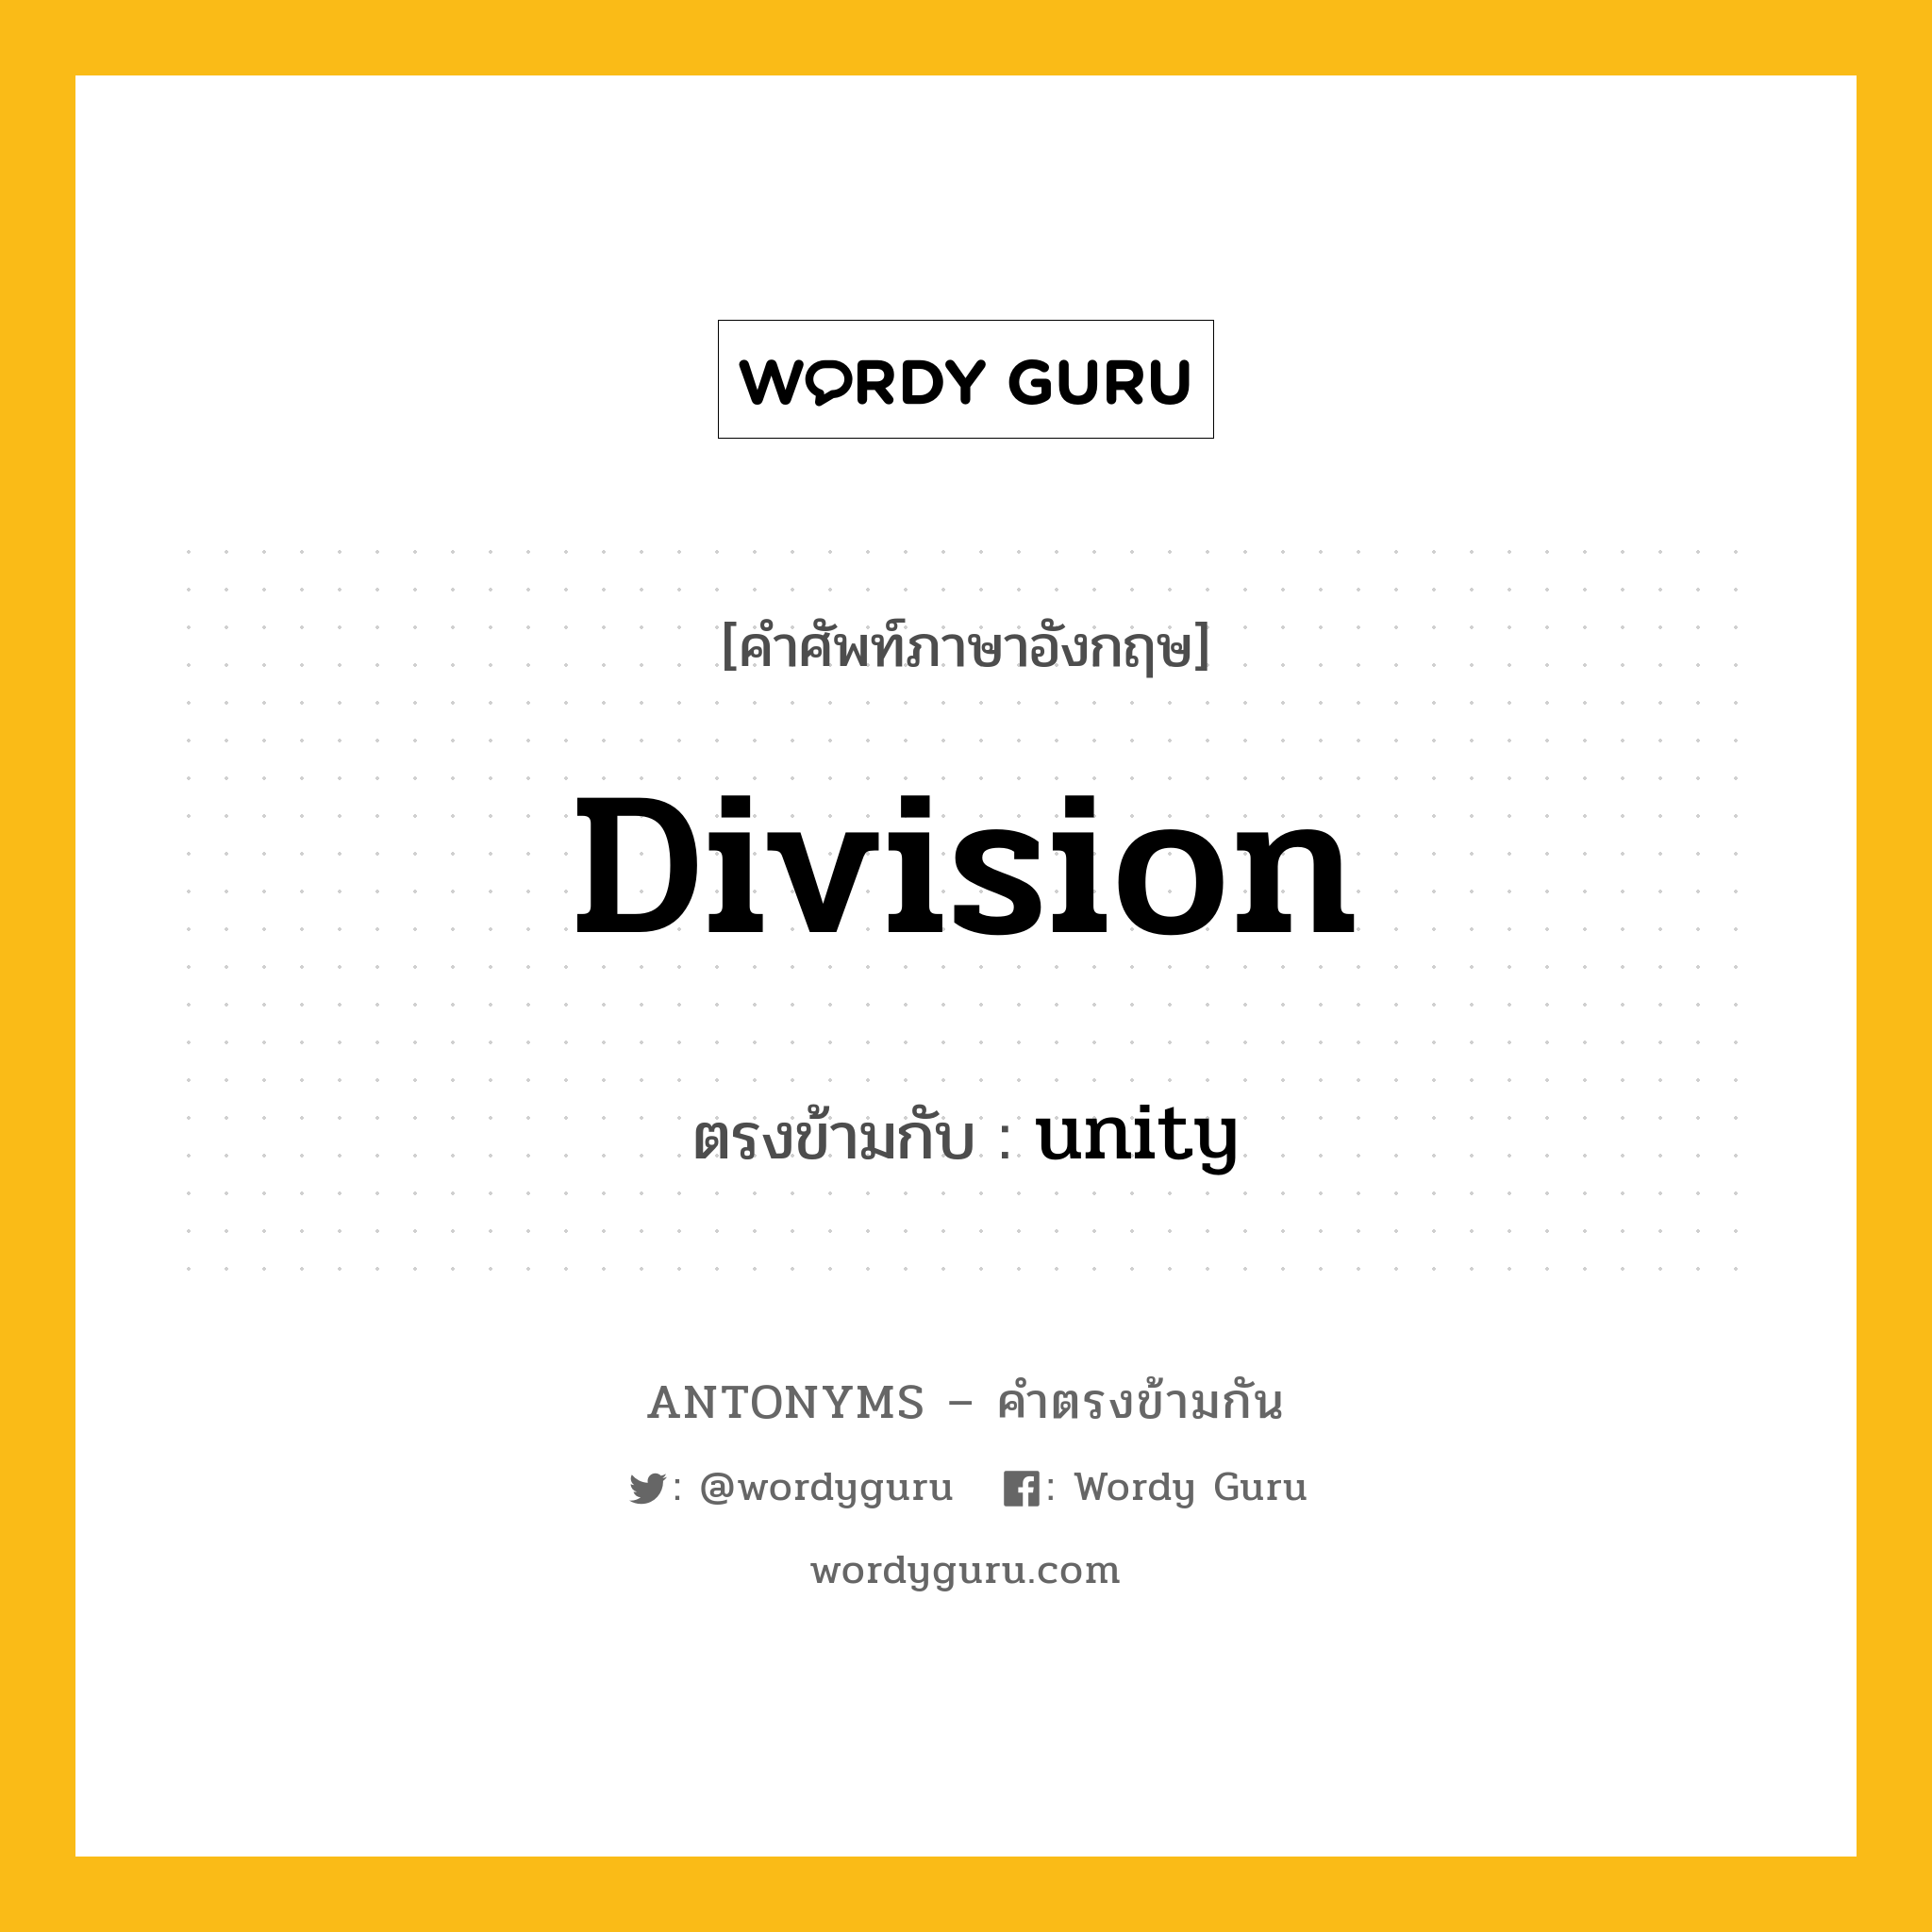 division เป็นคำตรงข้ามกับคำไหนบ้าง?, คำศัพท์ภาษาอังกฤษ division ตรงข้ามกับ unity หมวด unity